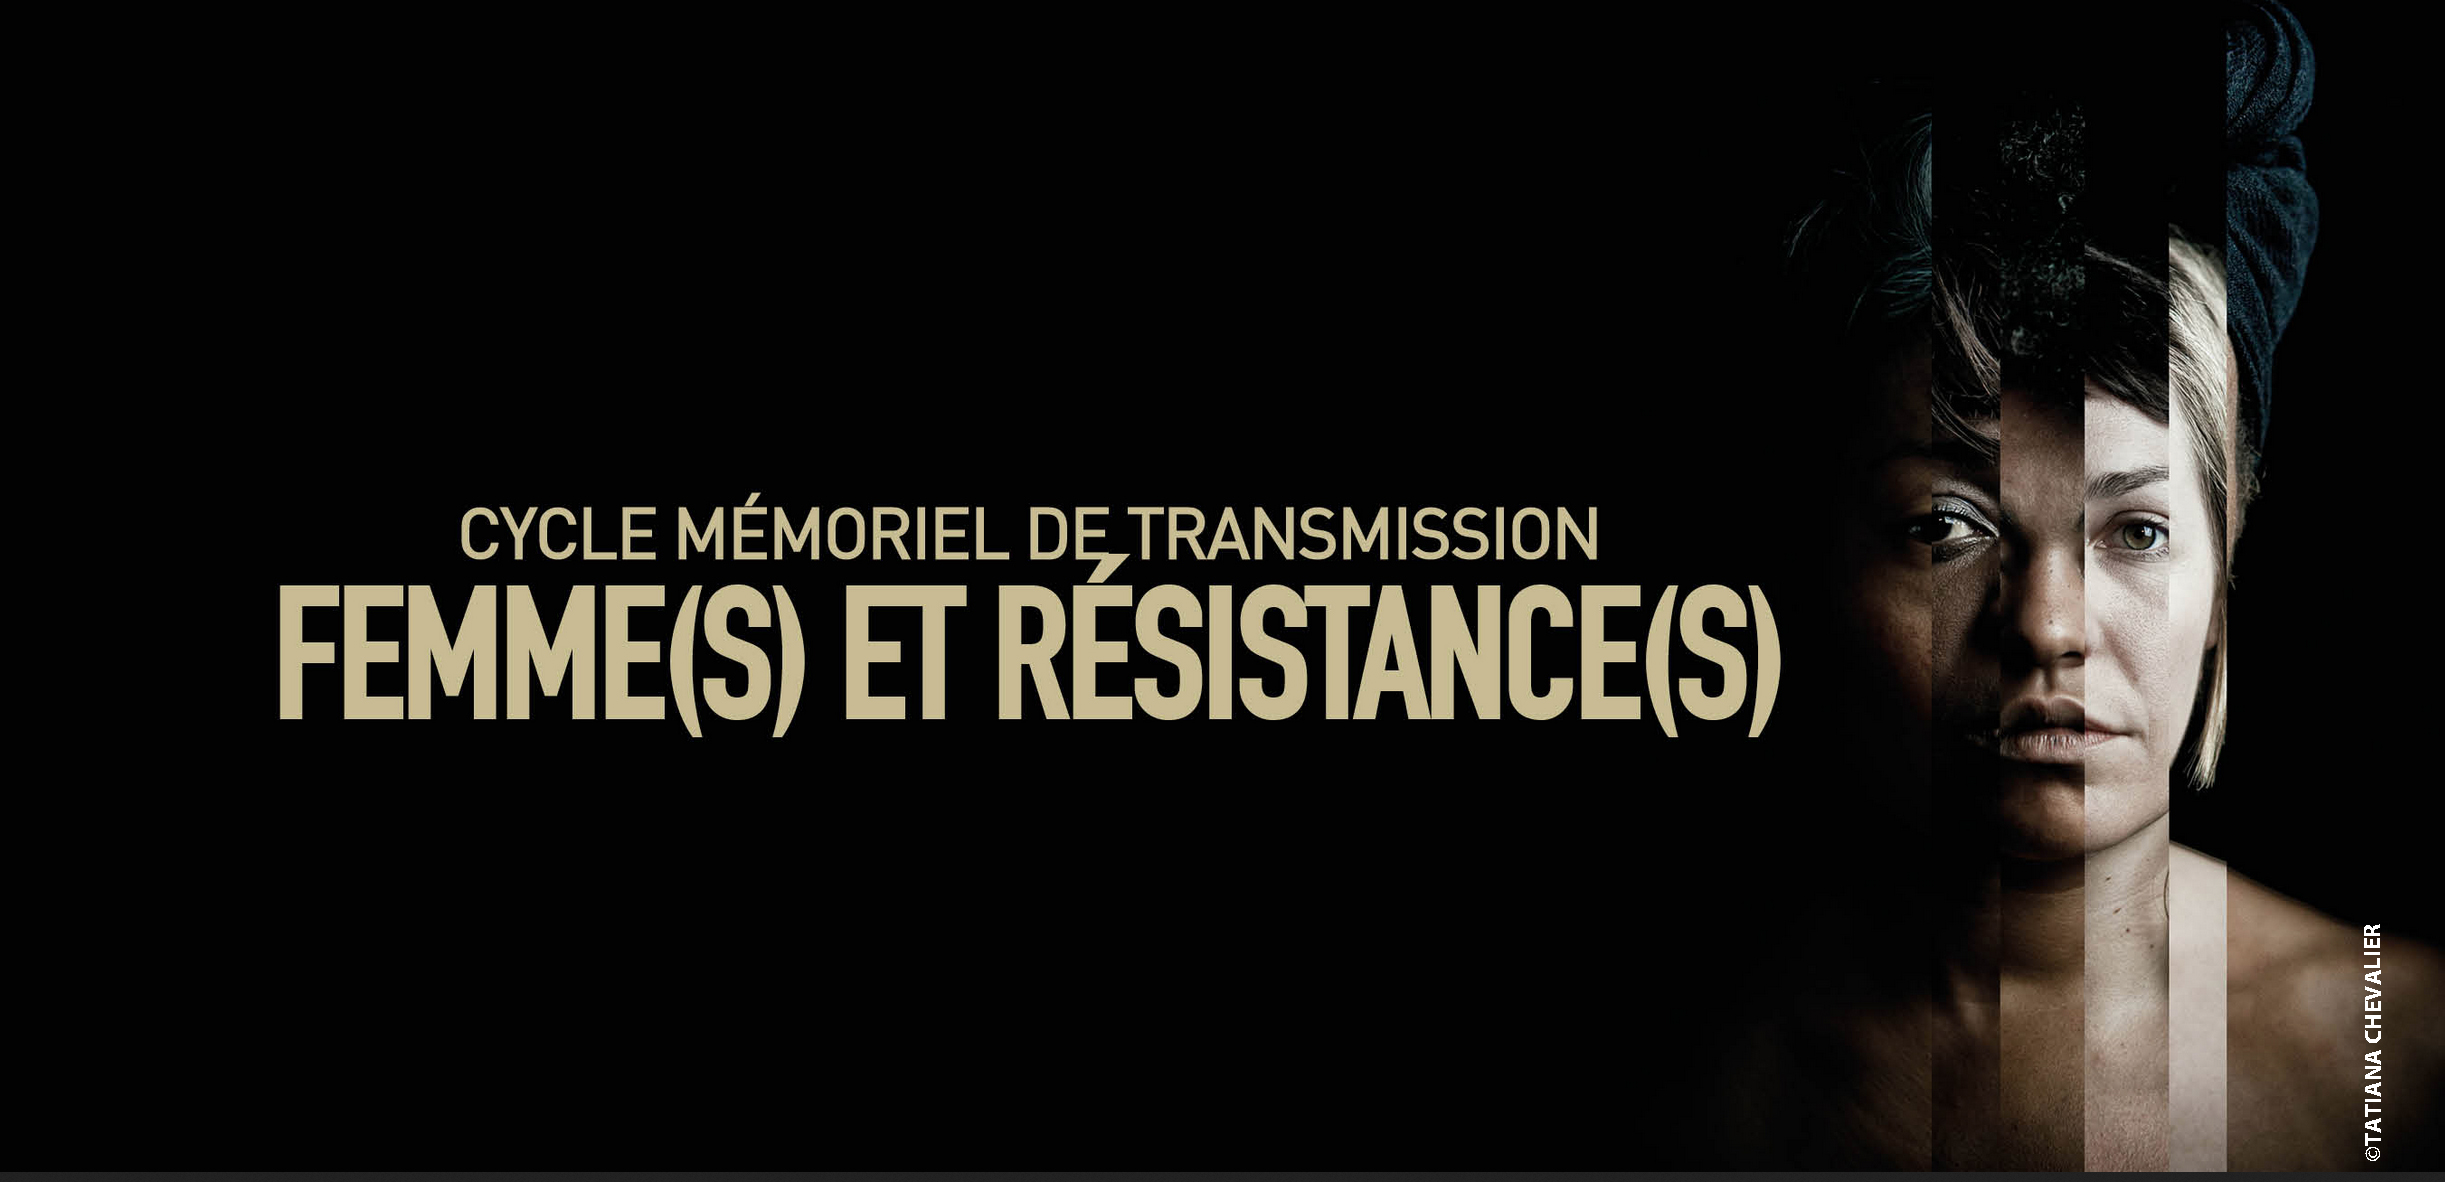 Cycle Mémoriel Femme(s) et Résistance(s)